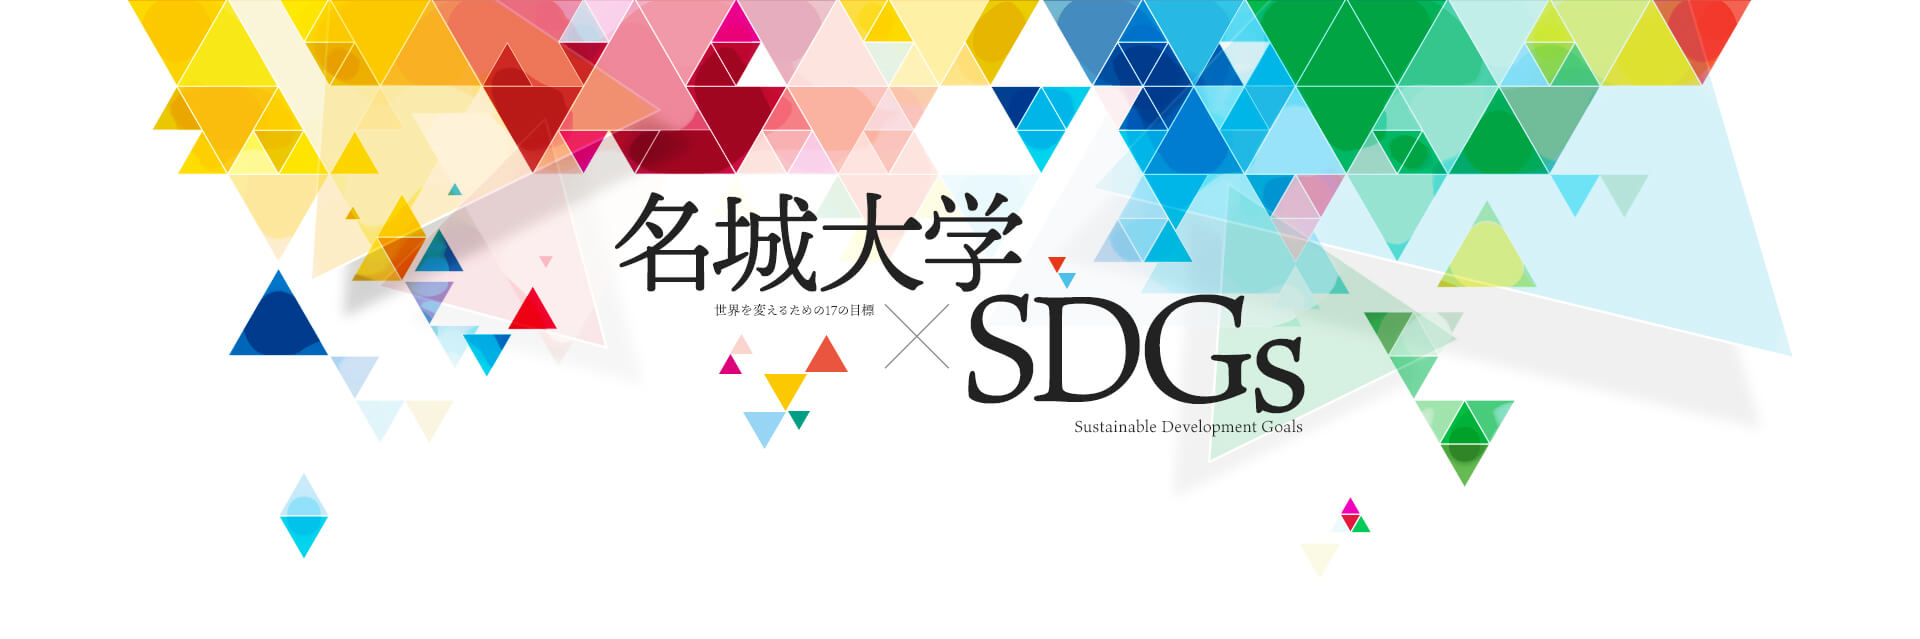 名城大学 SDGs